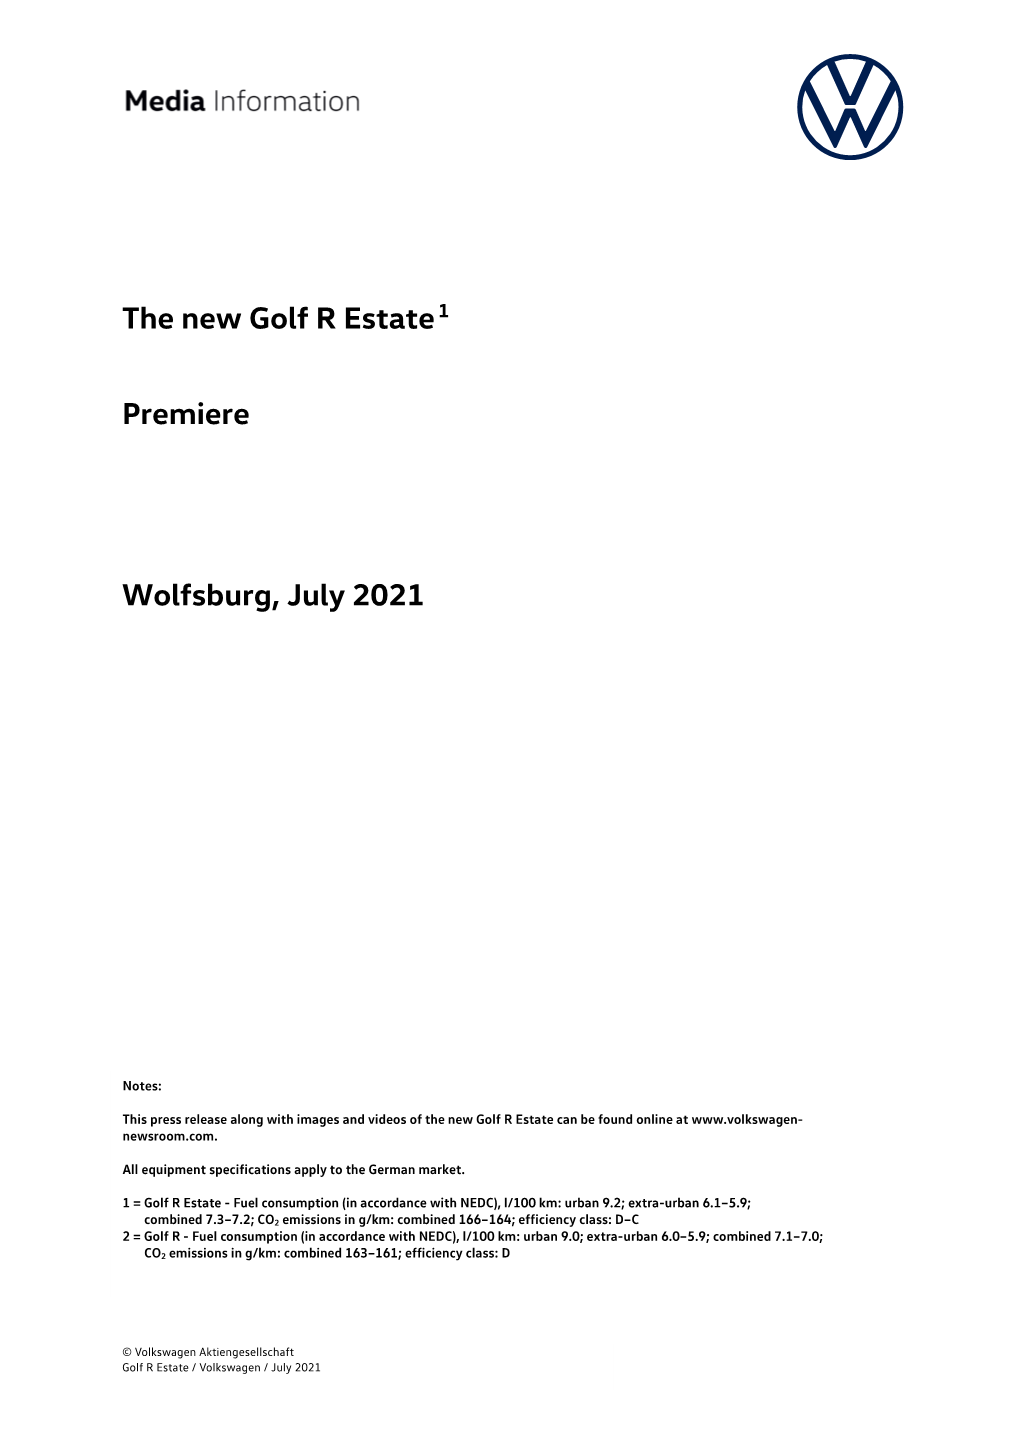 The New Golf R Estate1 Premiere Wolfsburg, July 2021